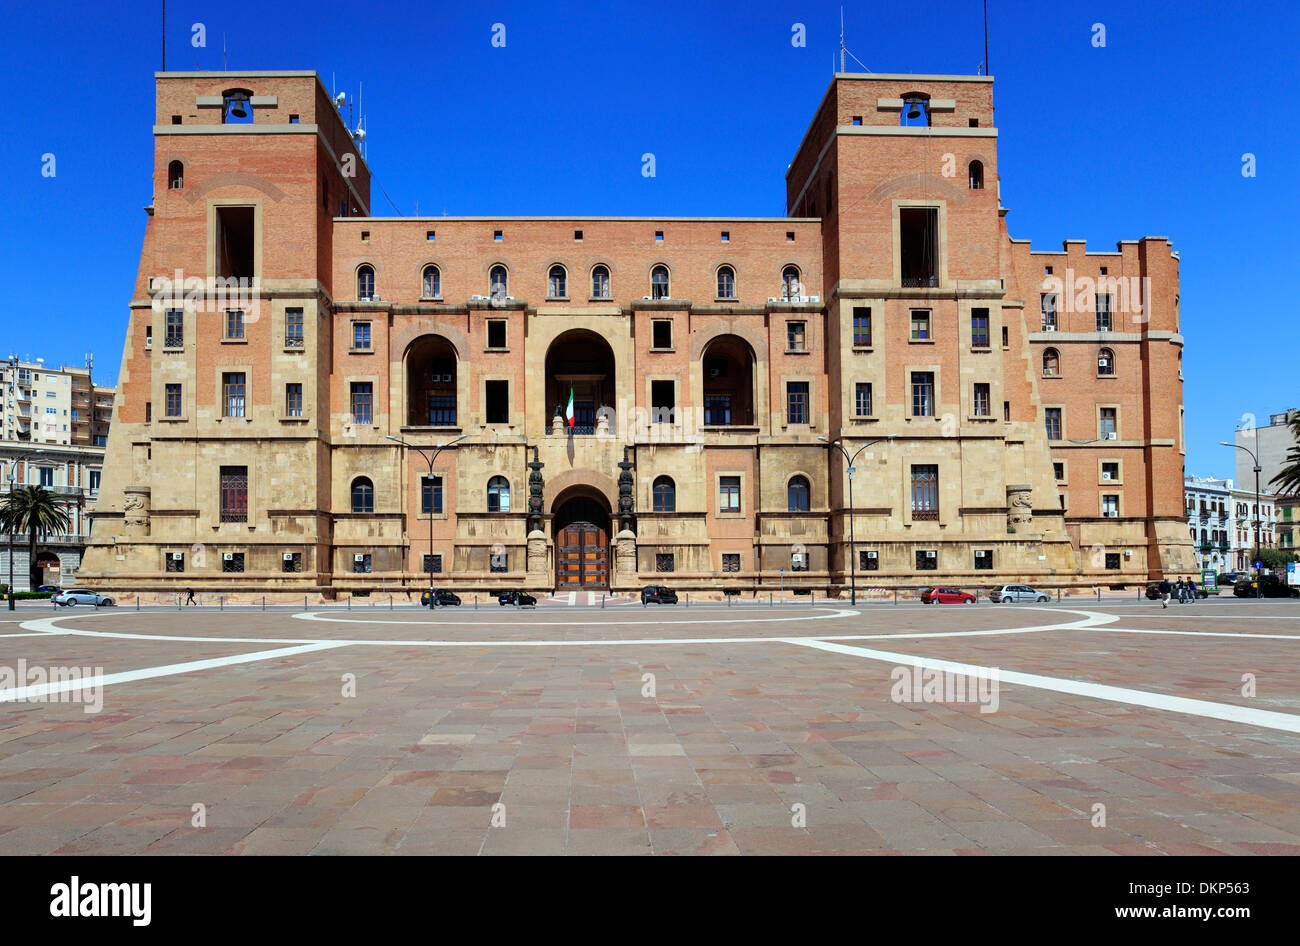 Law courts, Piazza Marina D' Italia, Taranto, Apulia, Italy Stock Photo